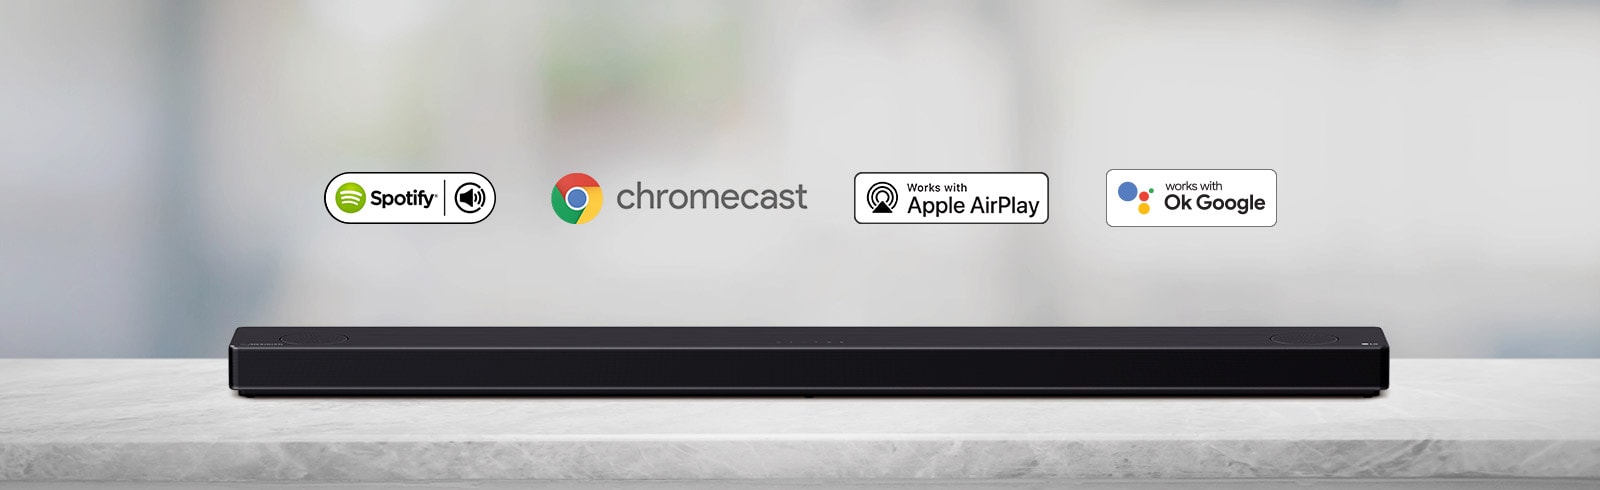 یک ساندبار واقع در قفسه‌ای خاکستری رنگ به همراه لوگوهای پلتفرم هوش مصنوعی (به ترتیب از چپ به راست، اسپاتیفای، الکسا، کروم کست، اپل ایرپلی و اوکی گوگل) مشاهده می‌شود.